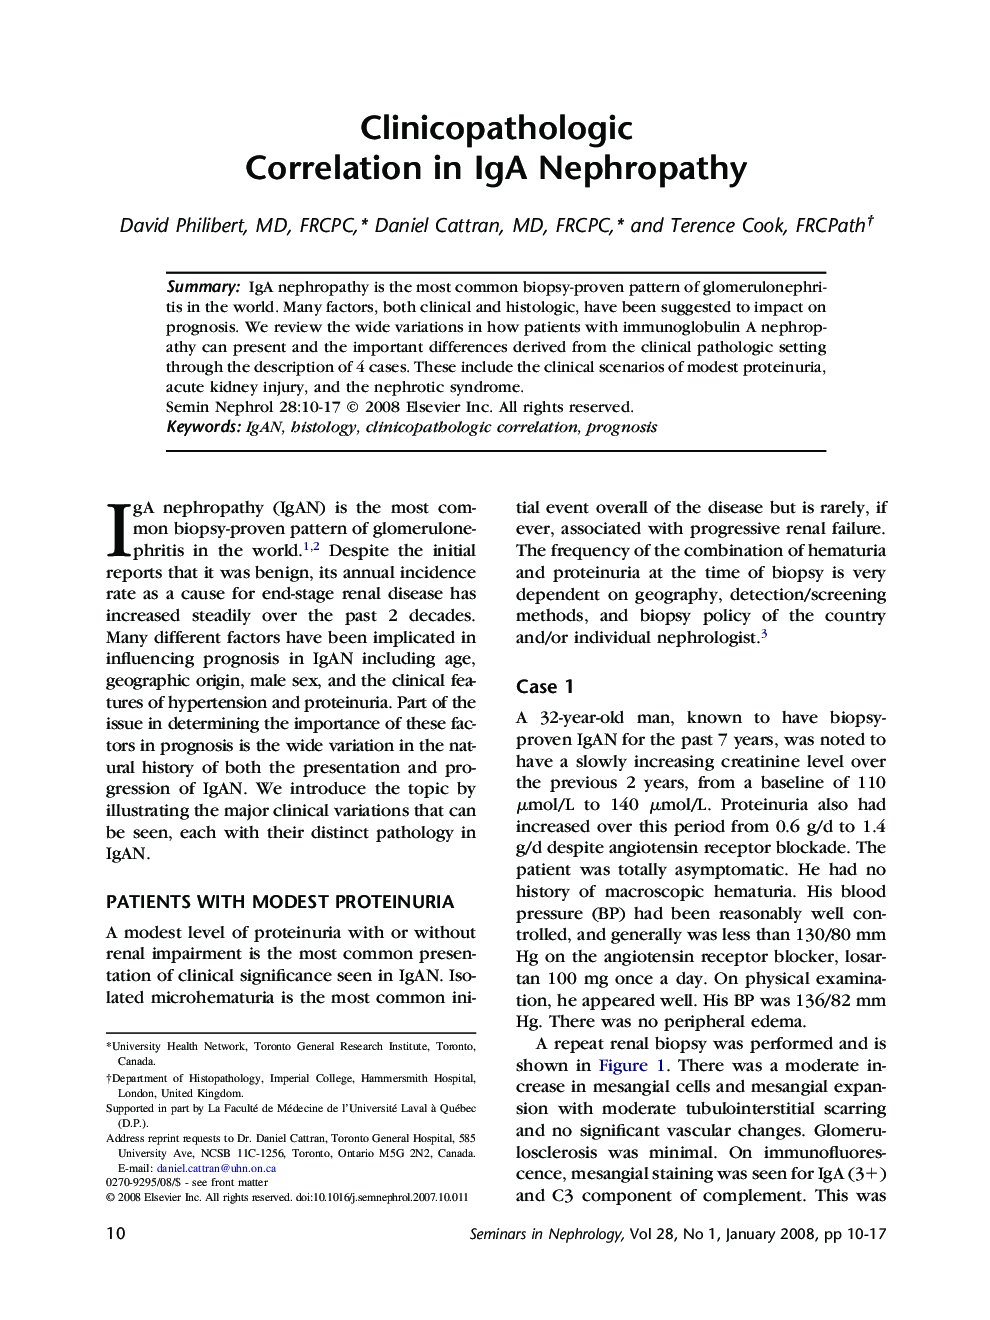 Clinicopathologic Correlation in IgA Nephropathy 